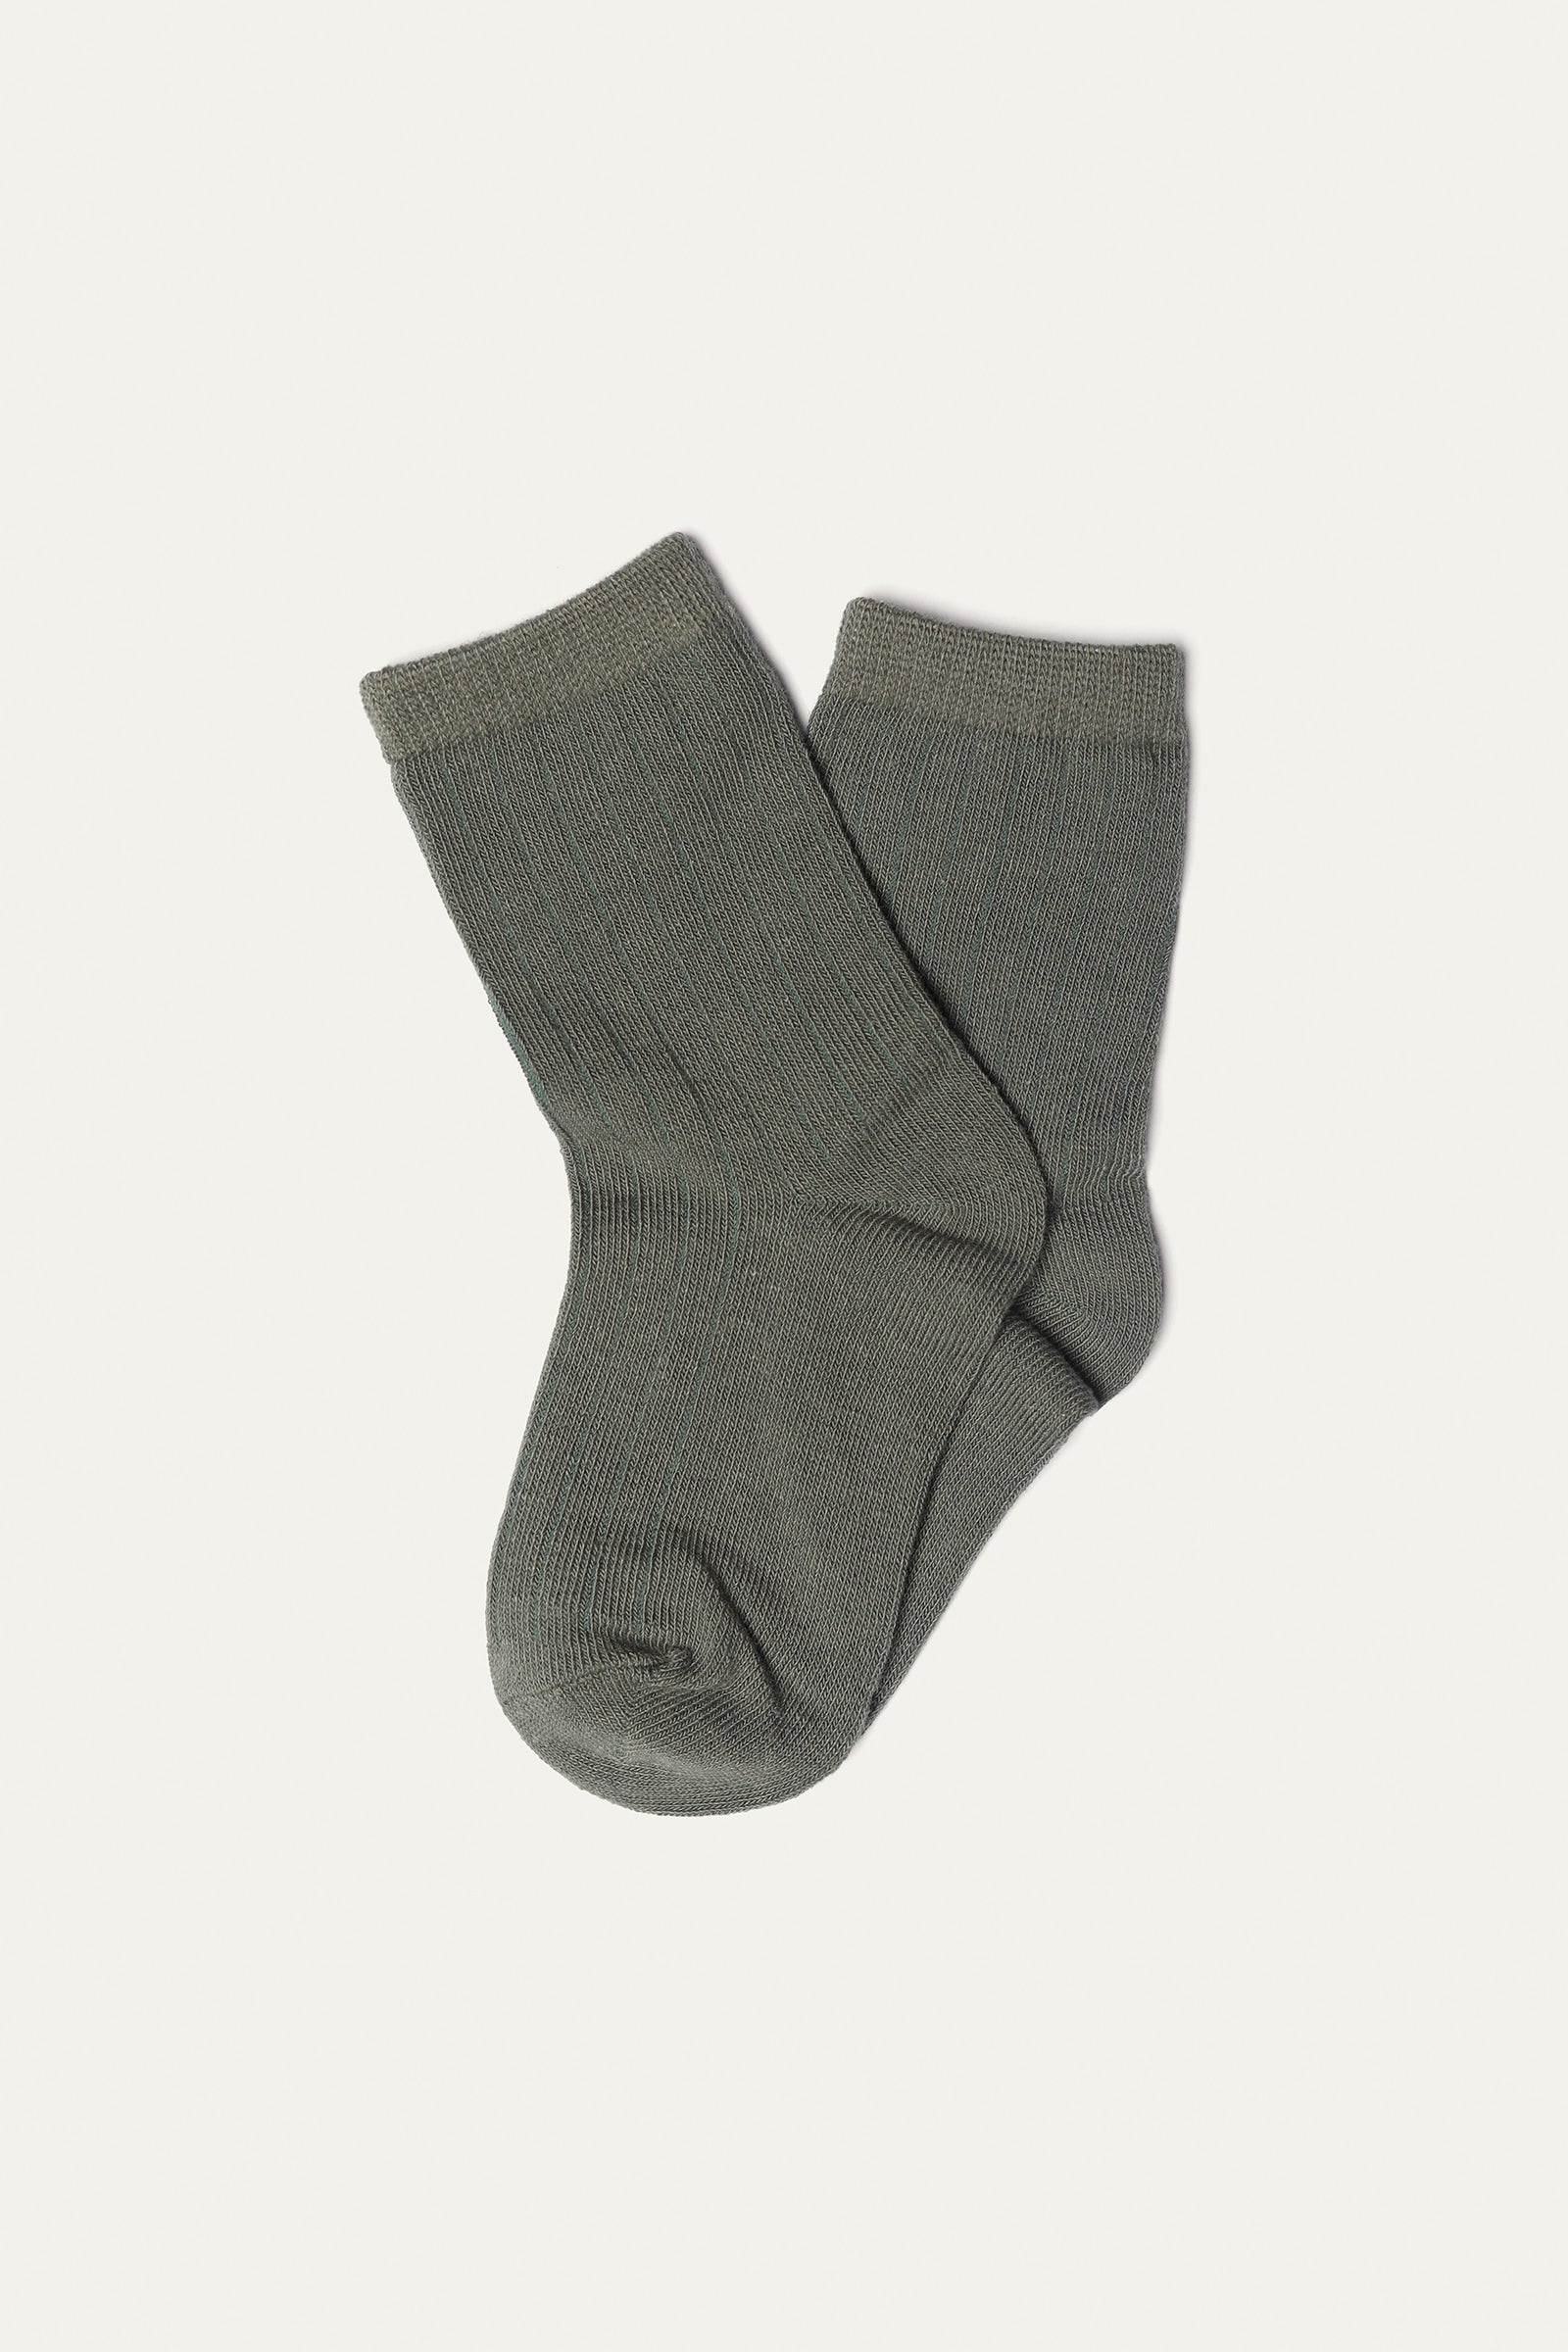 Socks (pack of 5) (SB-157R)